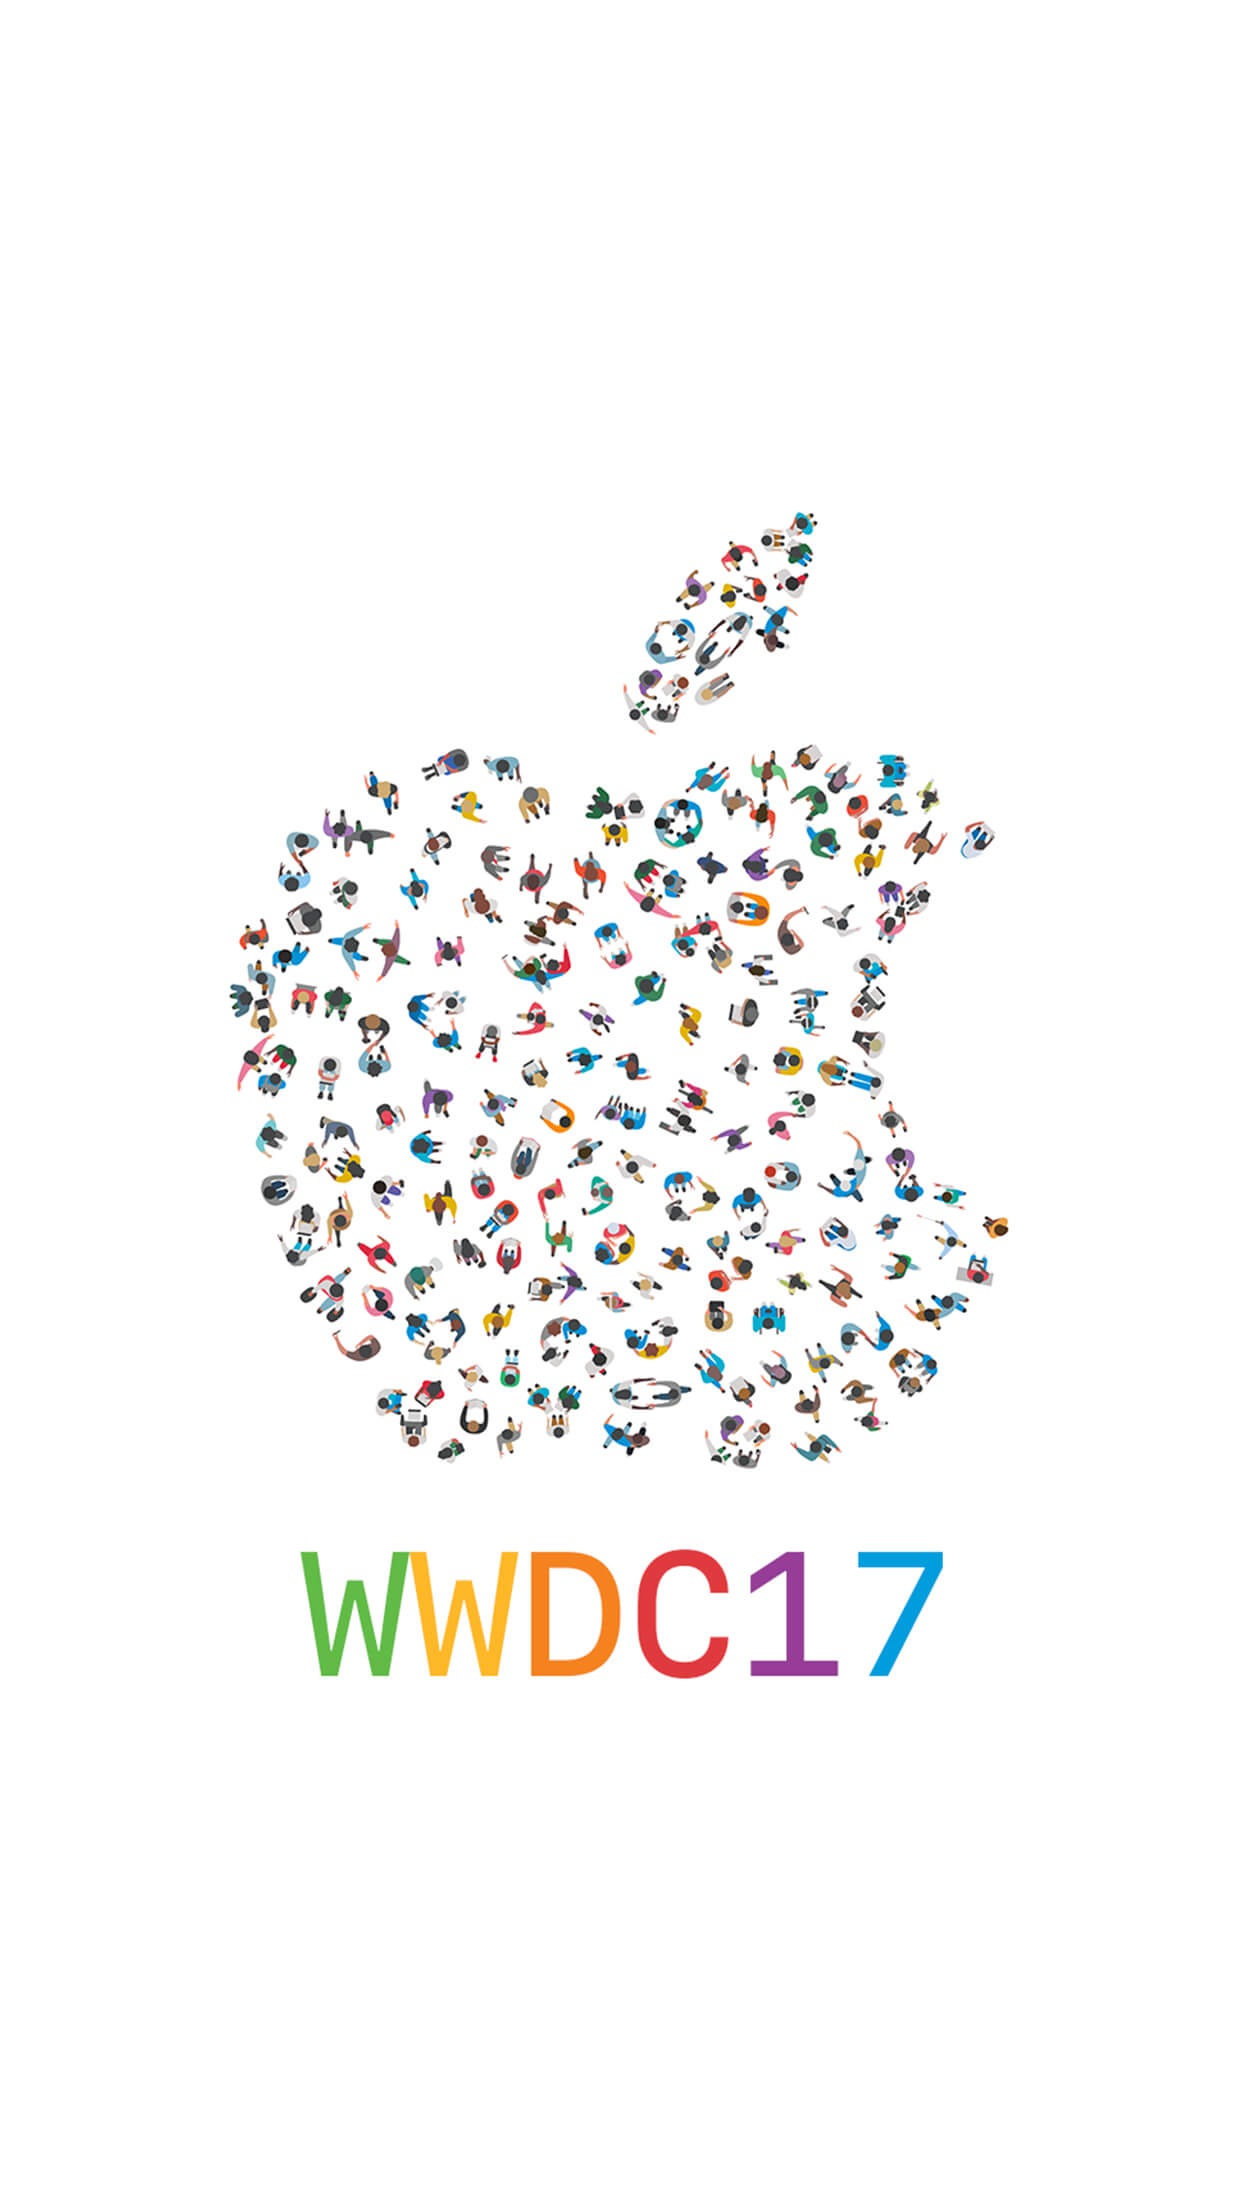 Специальная подборка обоев к WWDC 2017. Фото.